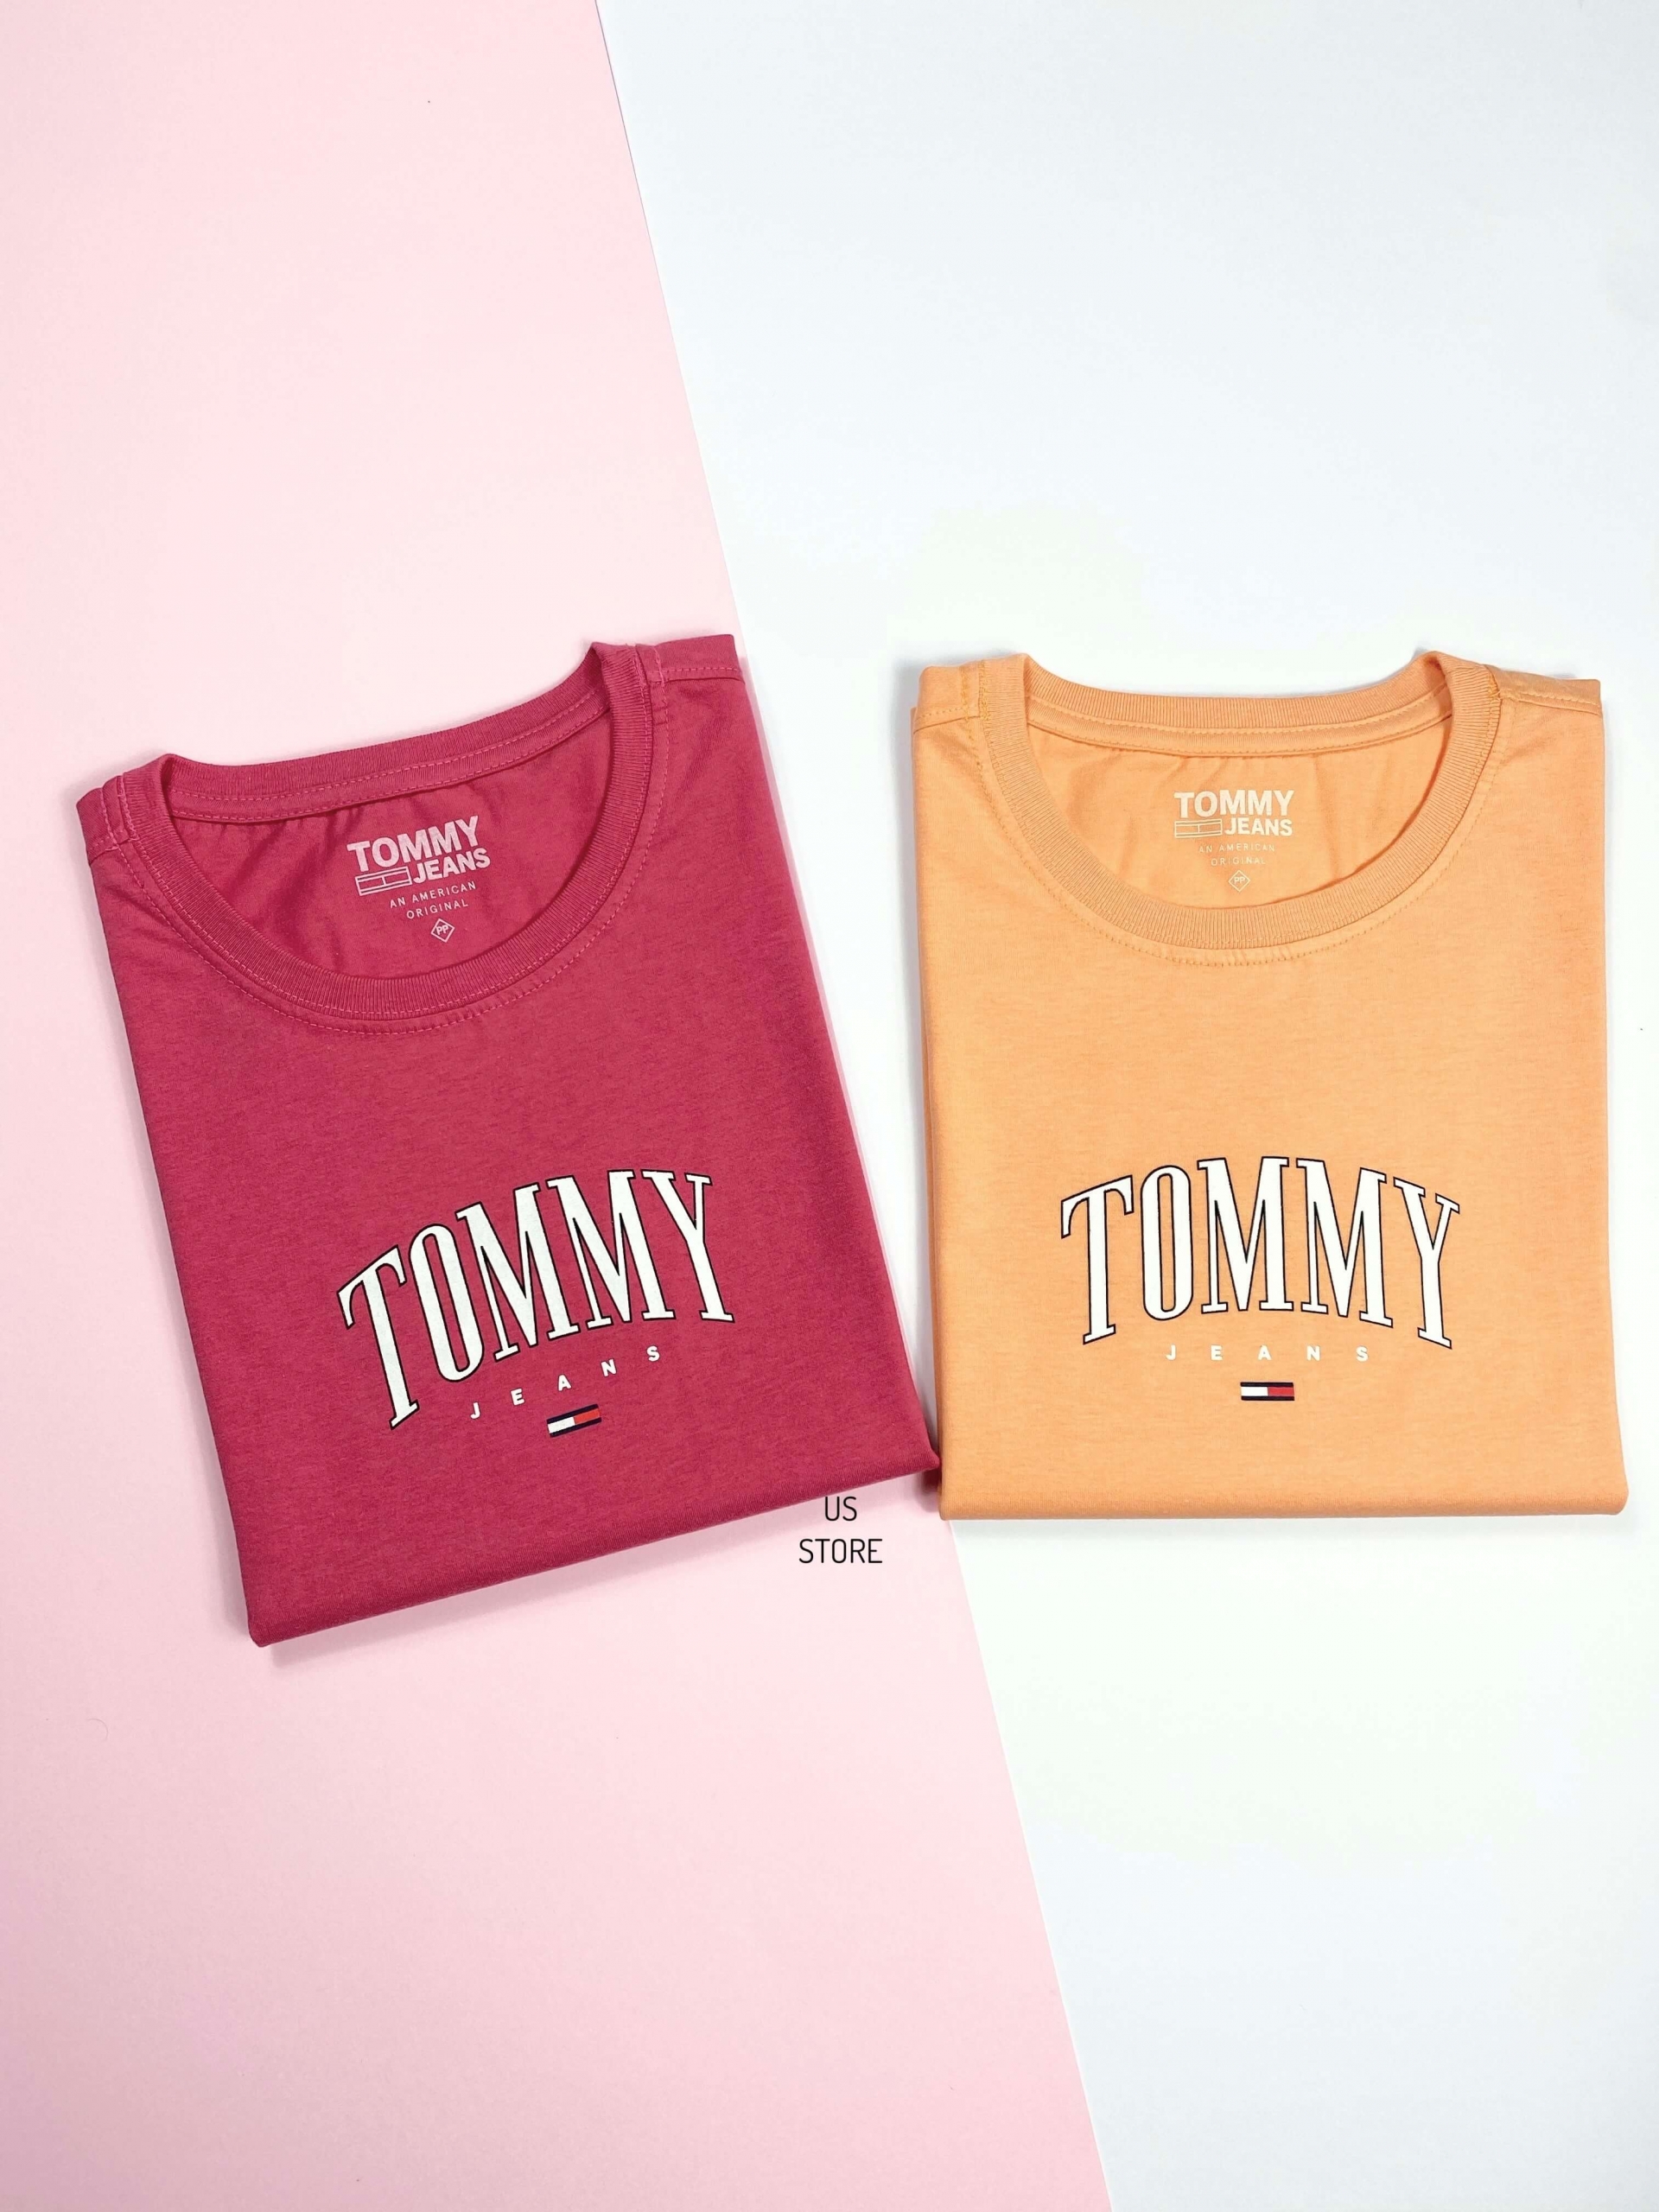 Camiseta Tommy Hilfiger Jeans Amarela Feminina - Loja Us Store